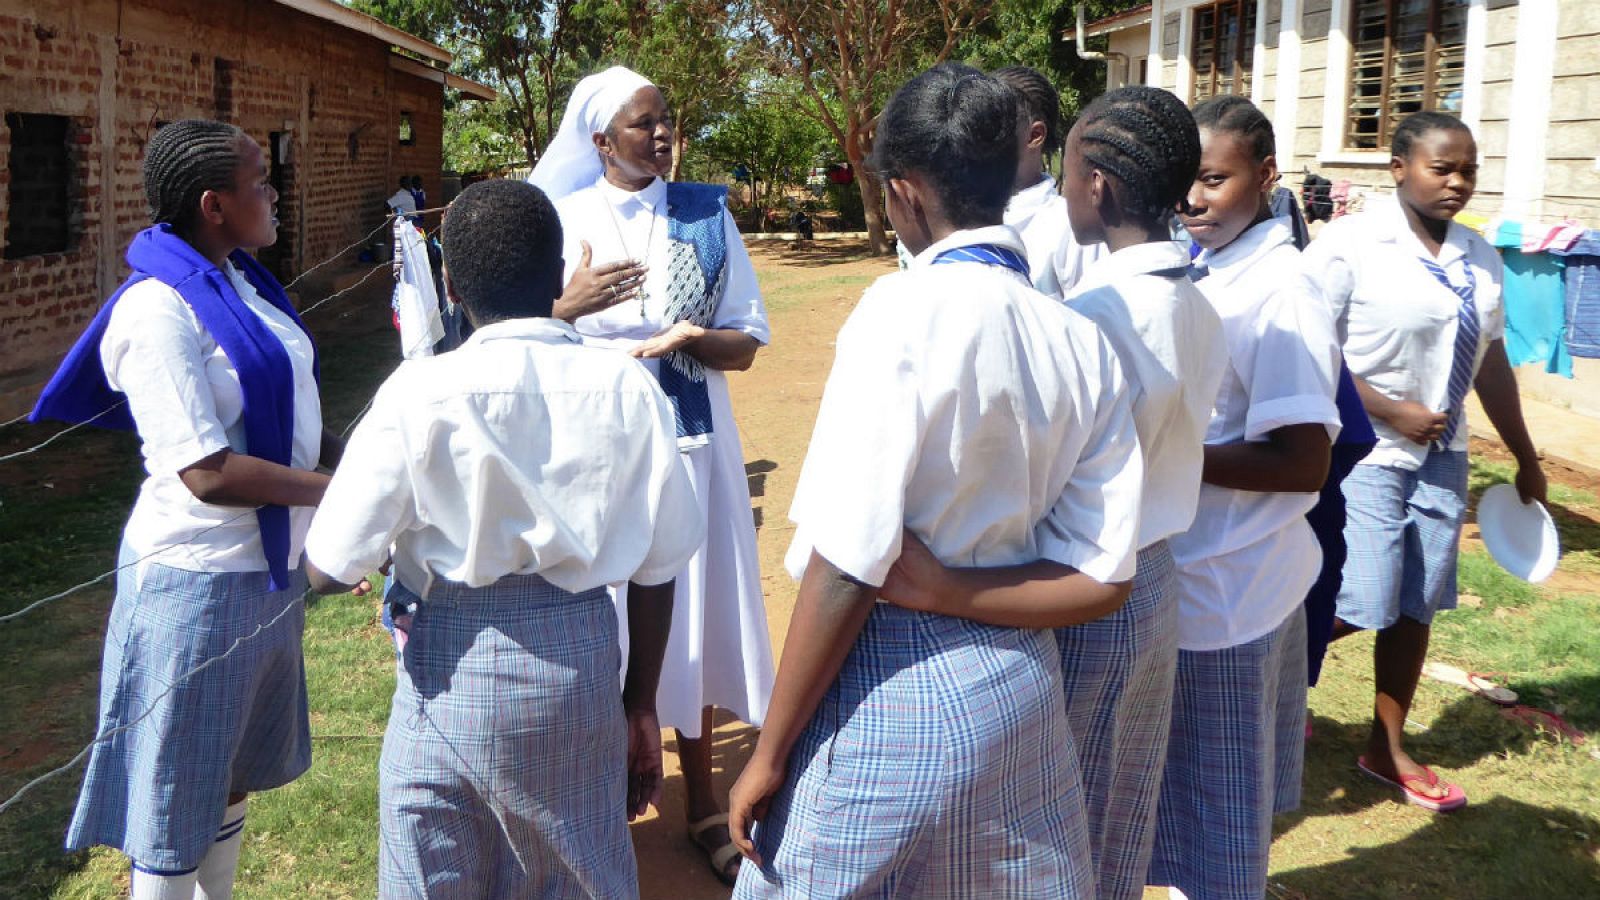 La escuela de secundaria de Maungu ha permitido que 170 alumnas puedan estudiar